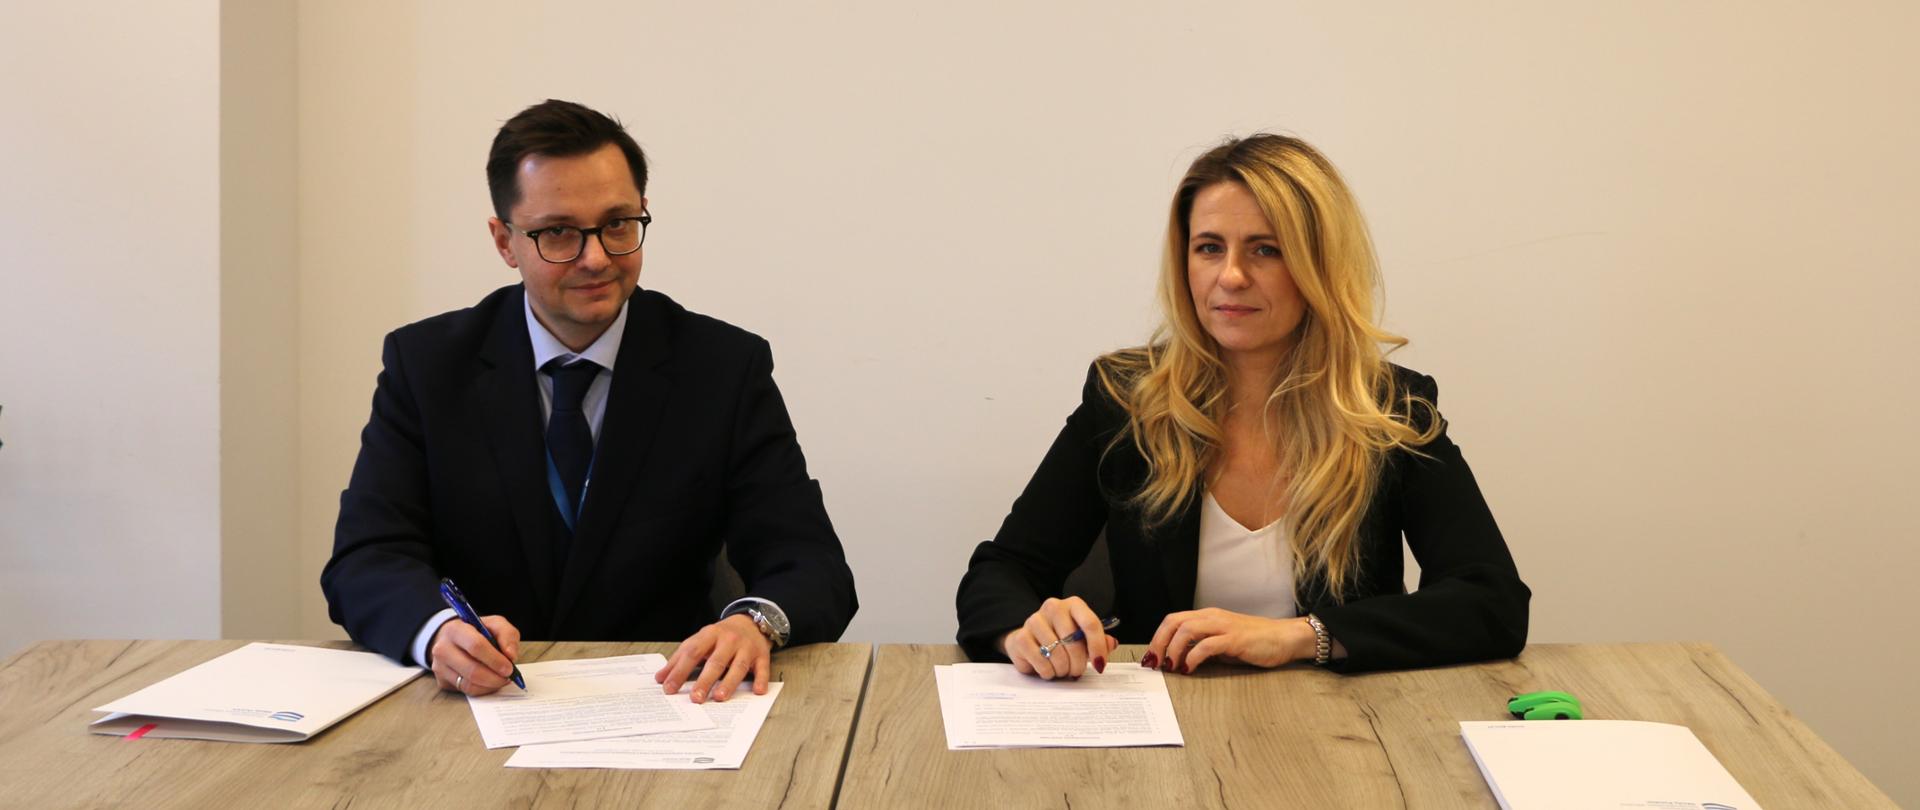 Podpisanie umowy na opracowanie PUW z udziałem Wiceprezesa Wód Polskich i przedstawicielki Wykonawcy